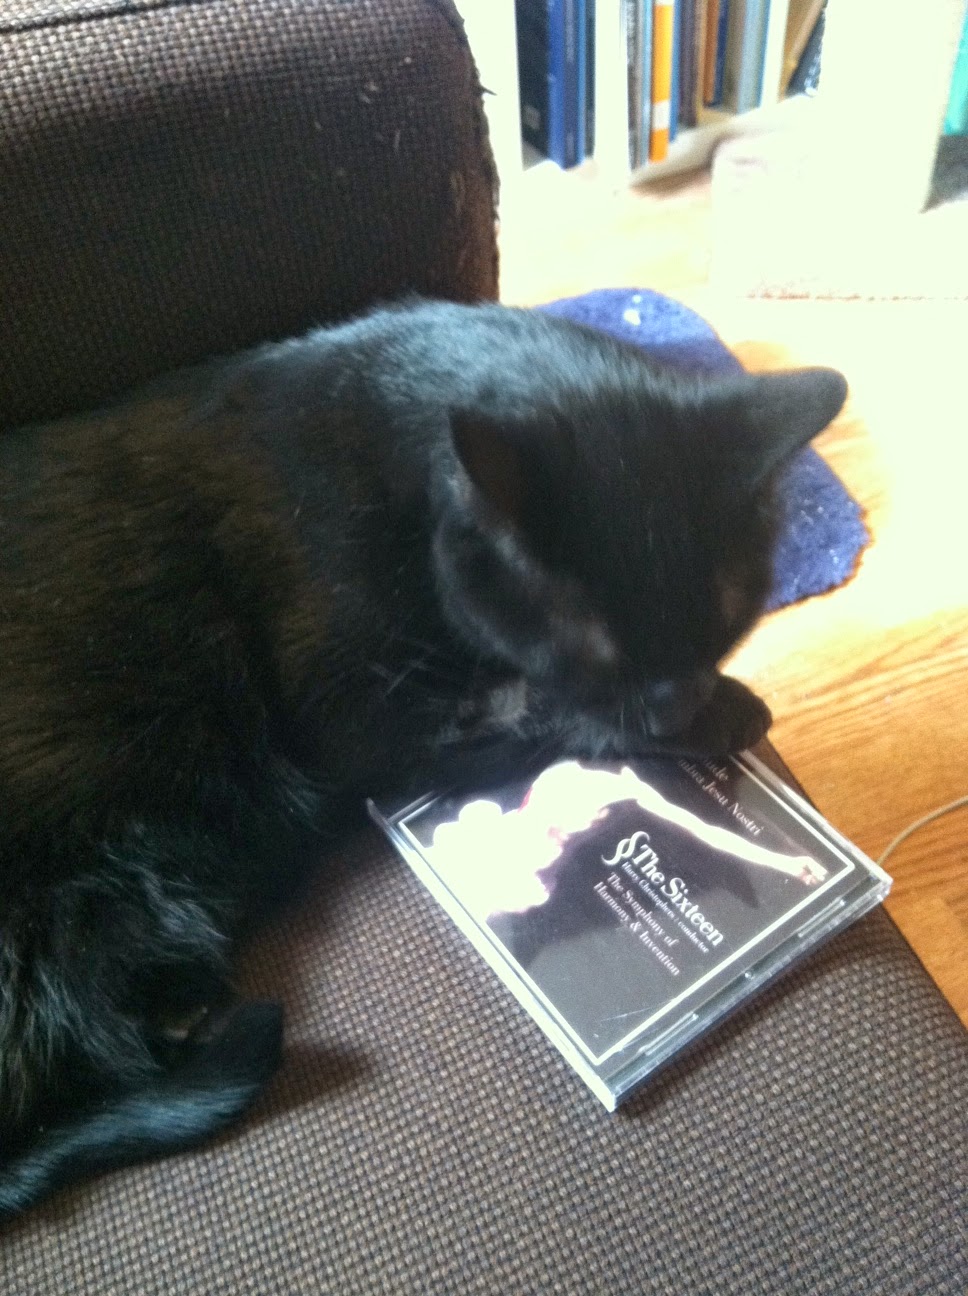 Samson sitting on a CD of Buxtehude